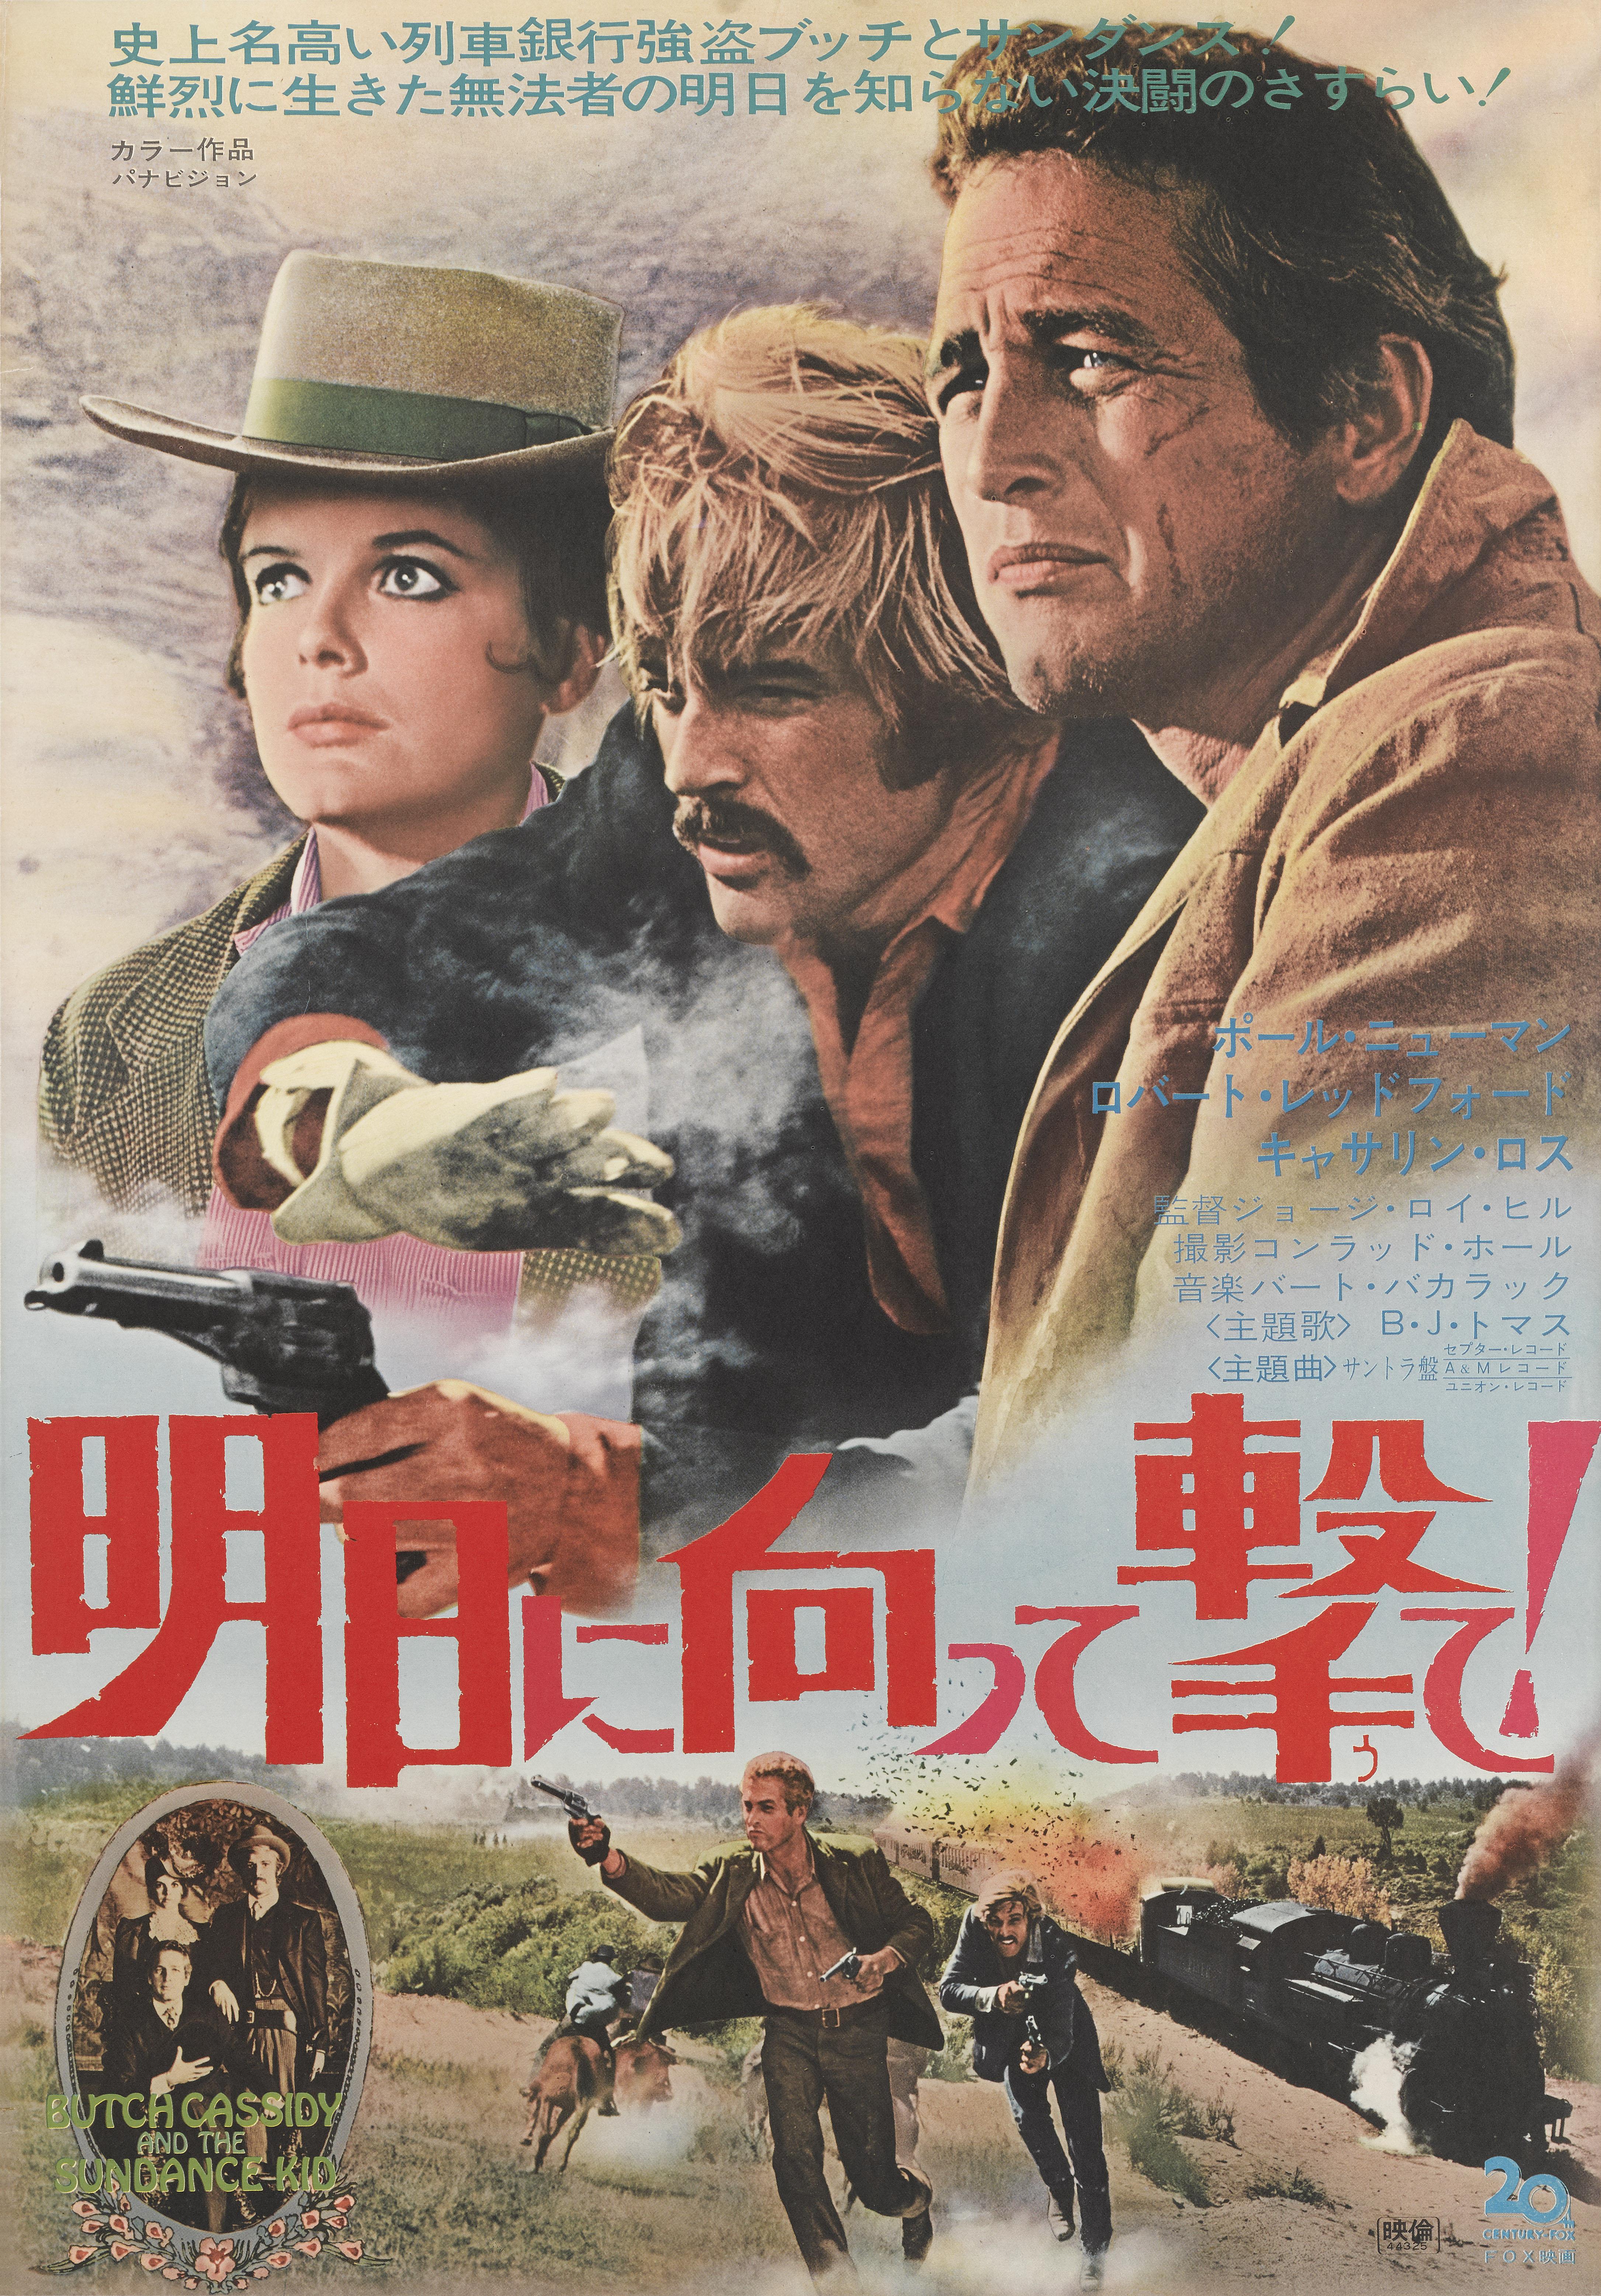 Originales japanisches Filmplakat für den Westernklassiker von 1969 mit Paul Newman, Robert Redford und Katherine Ross in den Hauptrollen. Die Regie bei diesem Film führte George Roy Hill. Diese Größe des Plakats wurde zur Zeit der Veröffentlichung